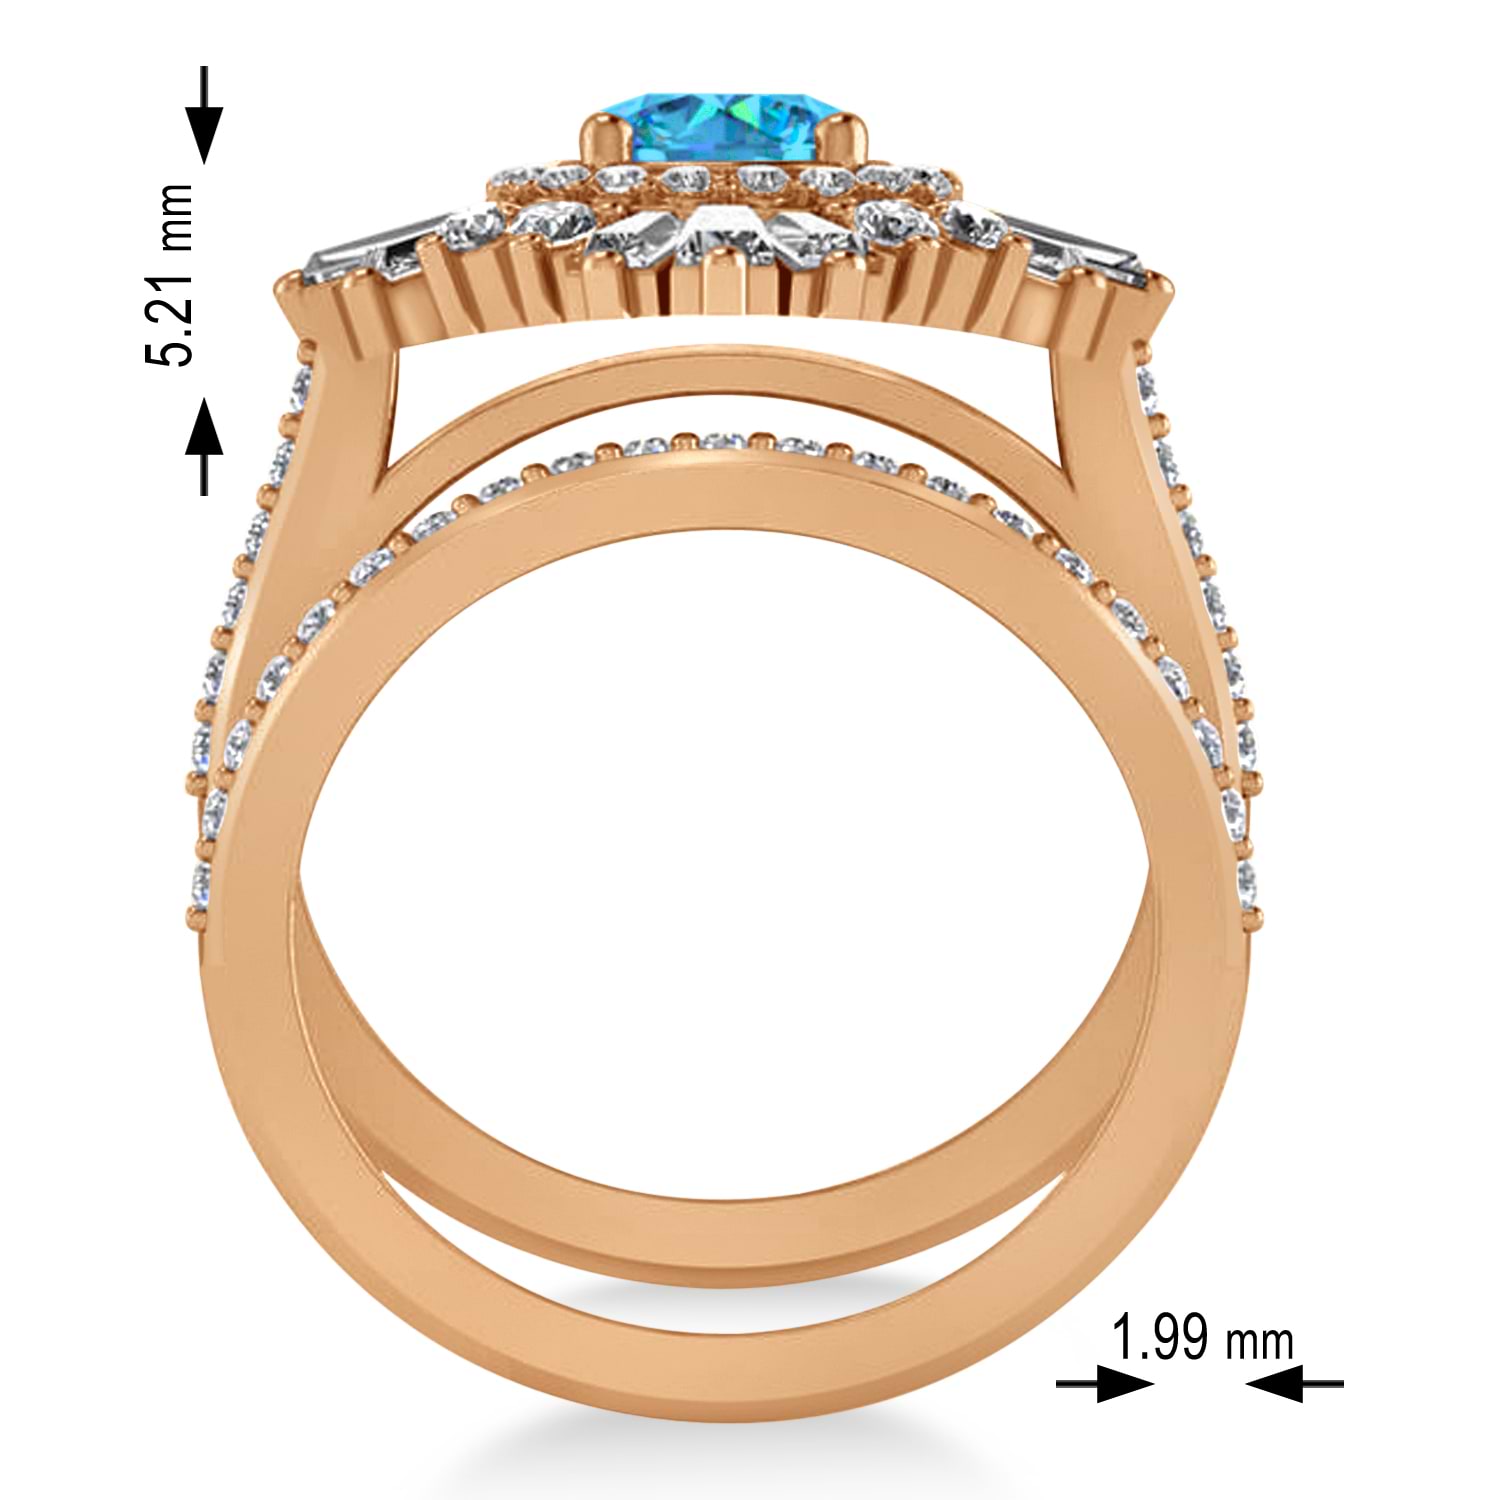 Blue Topaz & Diamond Ballerina Engagement Ring 18k Rose Gold (2.74 ctw)